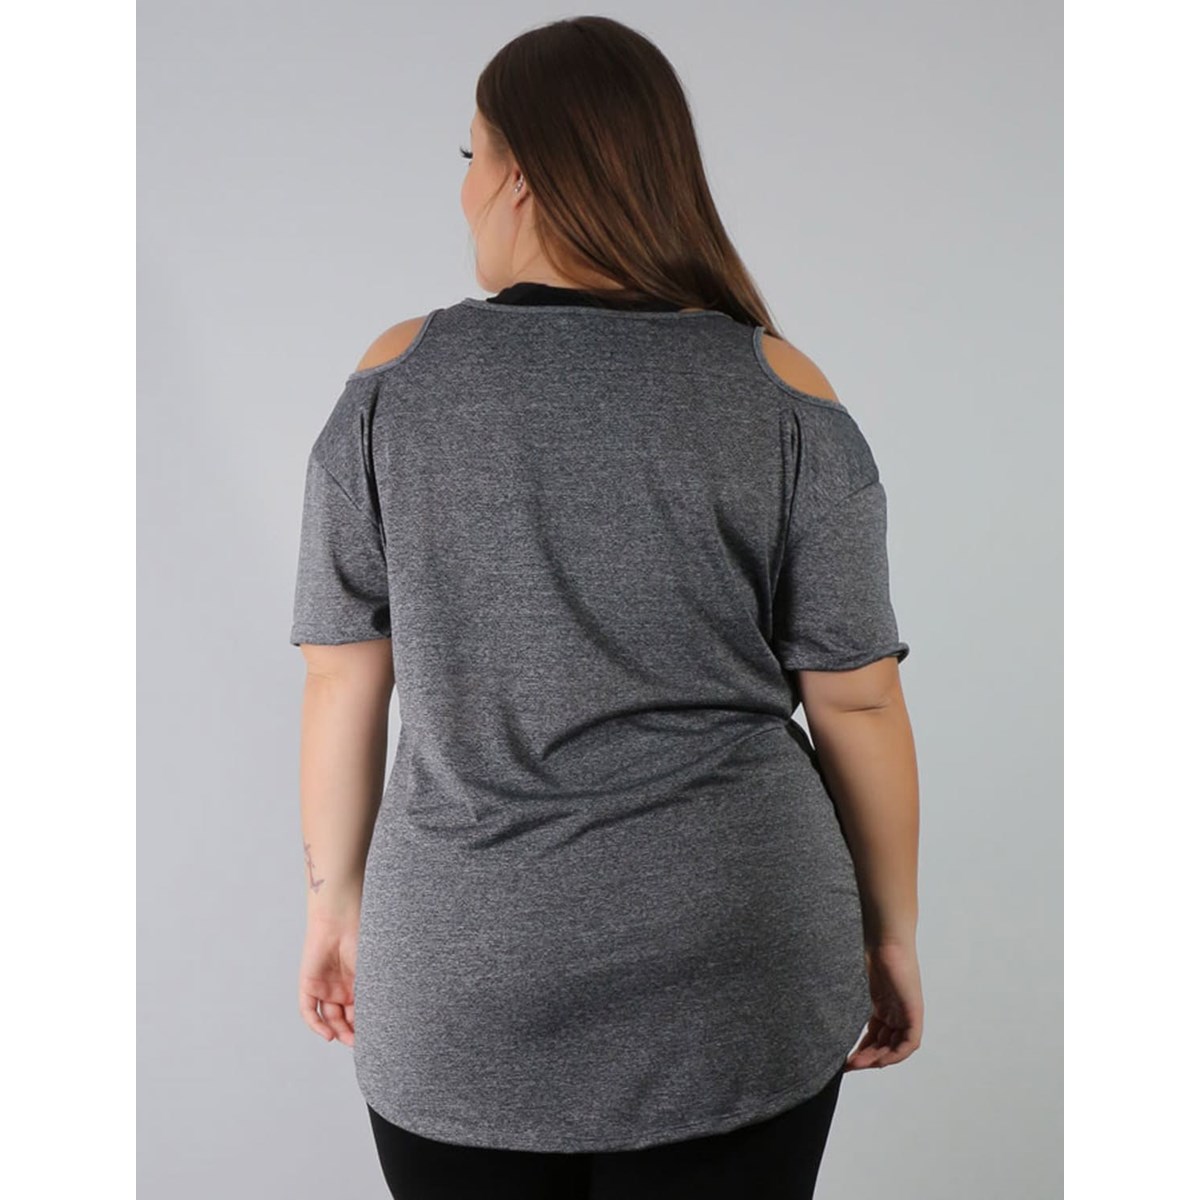 Blusa Plus Size em Dry Fit Mescla com Estampa | Ref: 4.4.1751STRONG-03